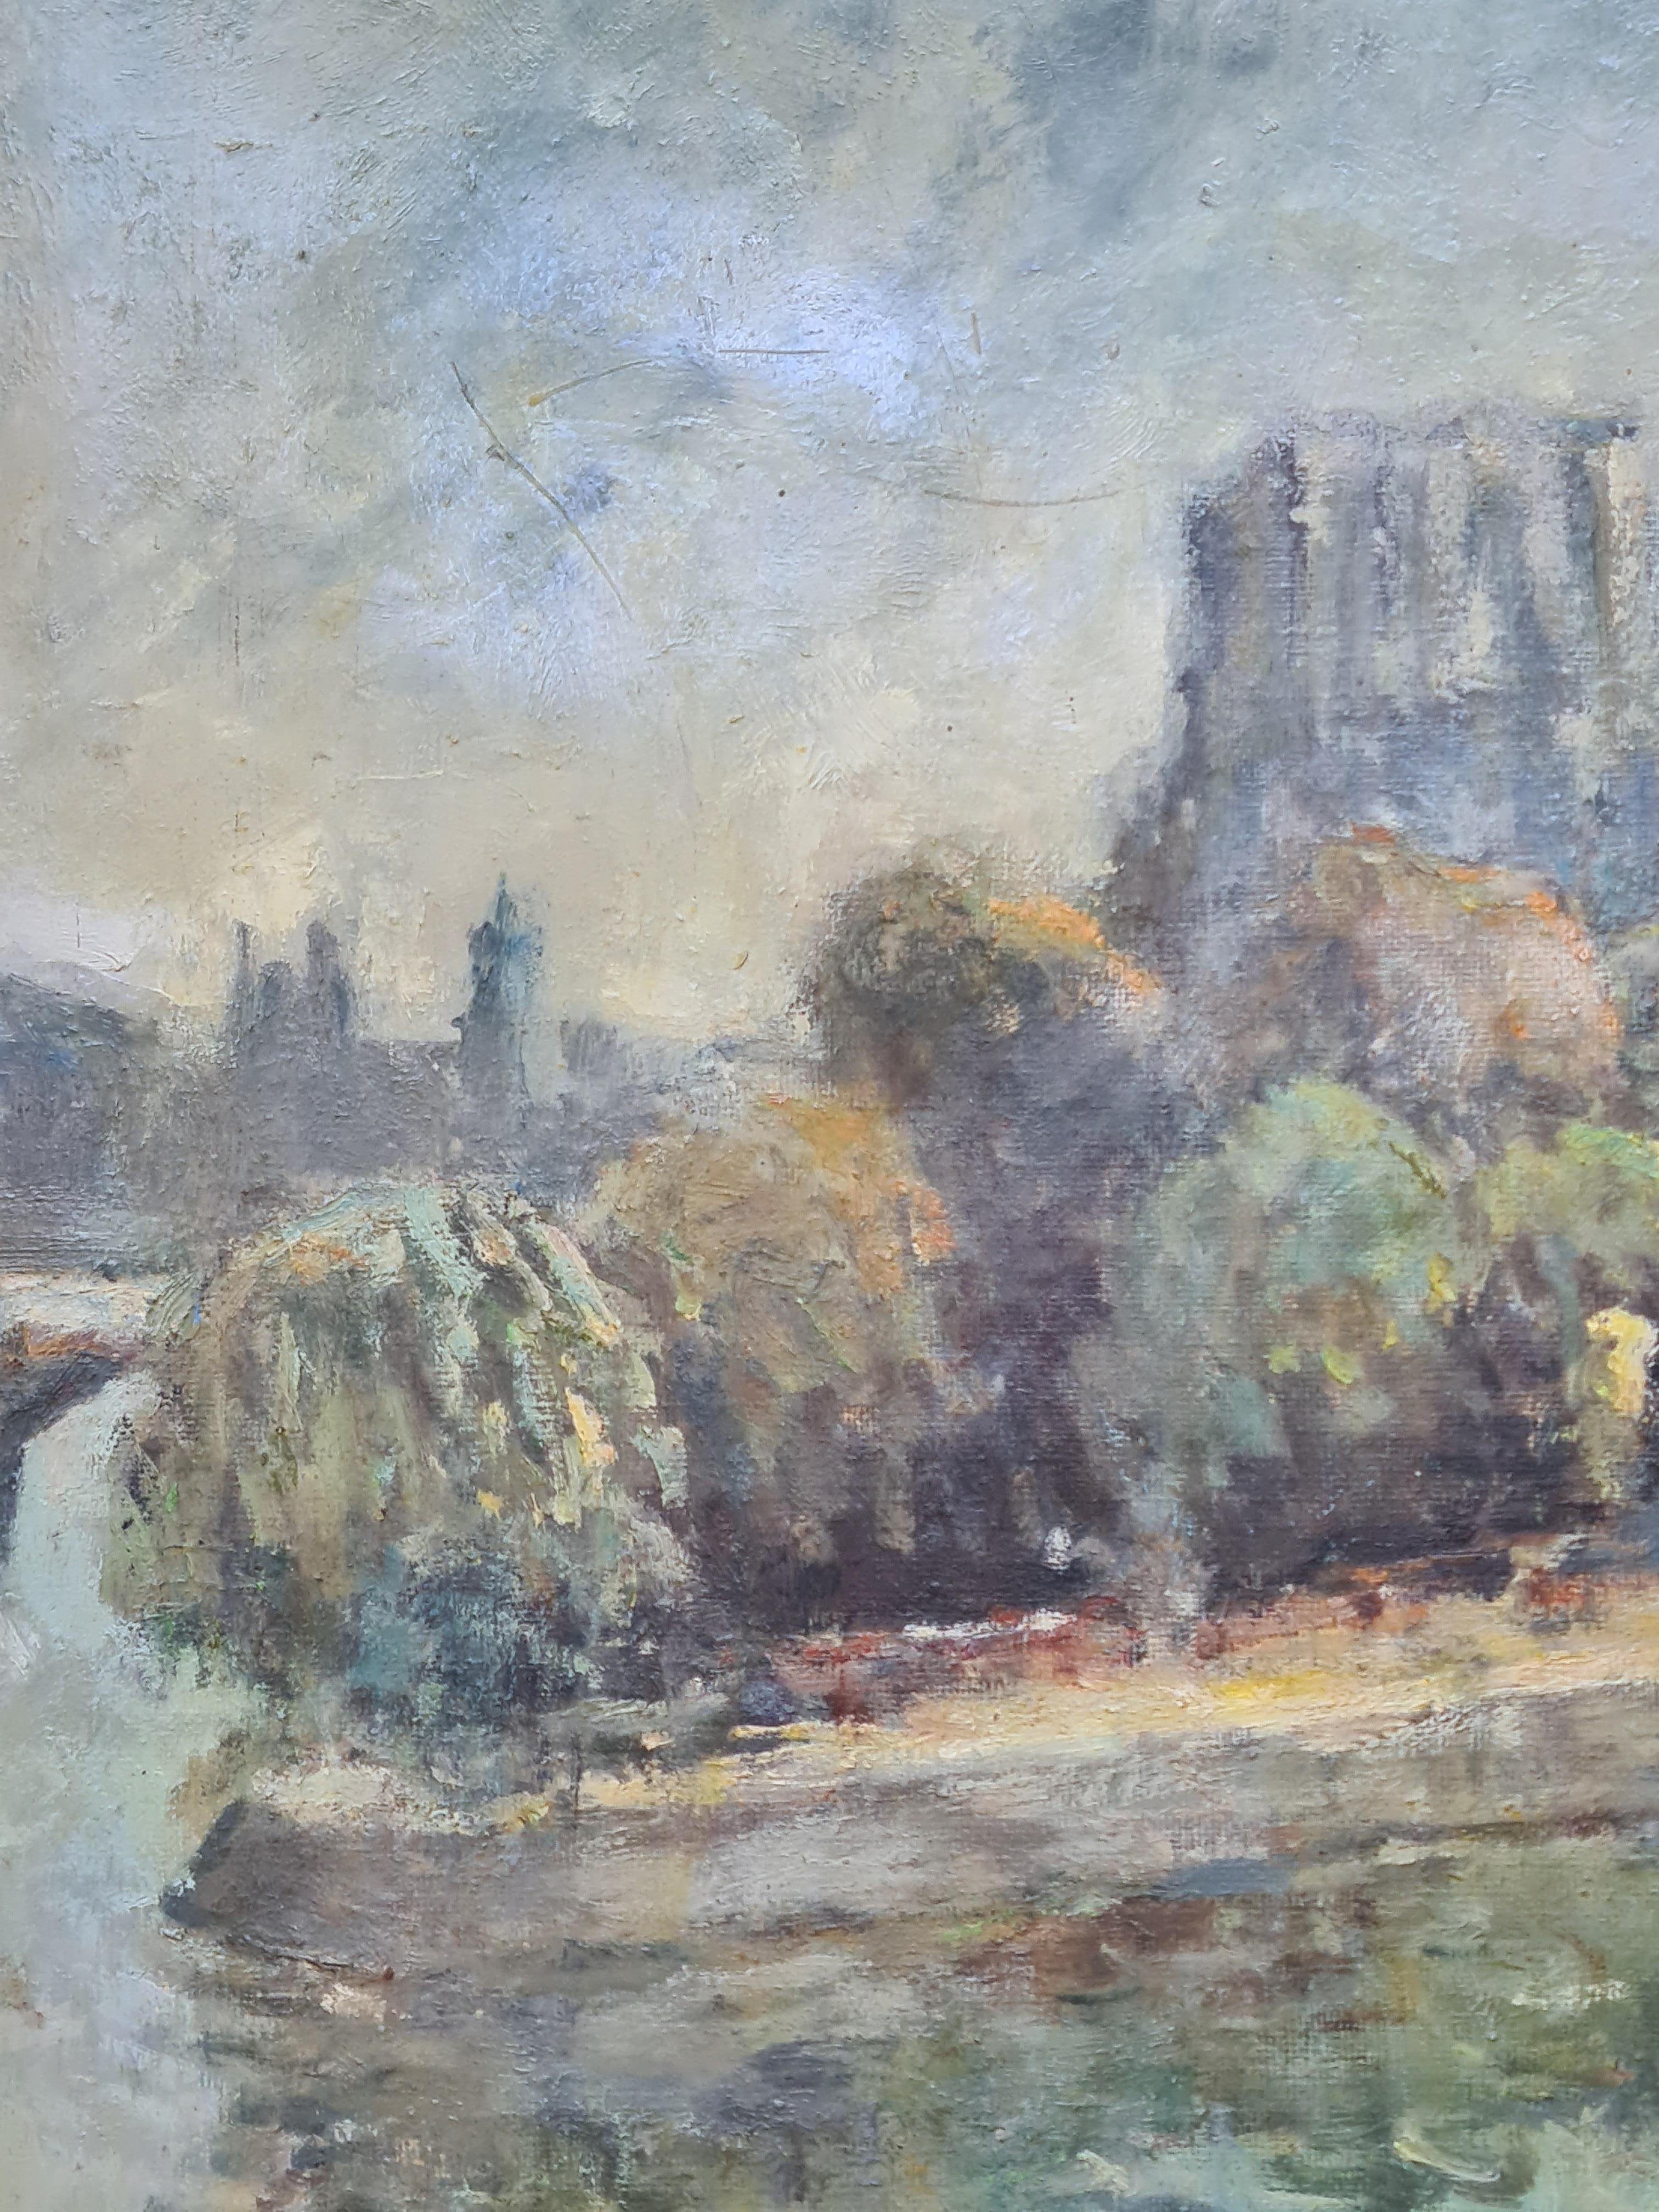 Huile sur toile française du milieu du siècle représentant le Pont Neuf à Paris par Georges Dominique Rouault. Signé en bas à gauche, présenté dans un beau cadre en bois peint et doré avec un slip en lin.

Vue charmante et atmosphérique de cette